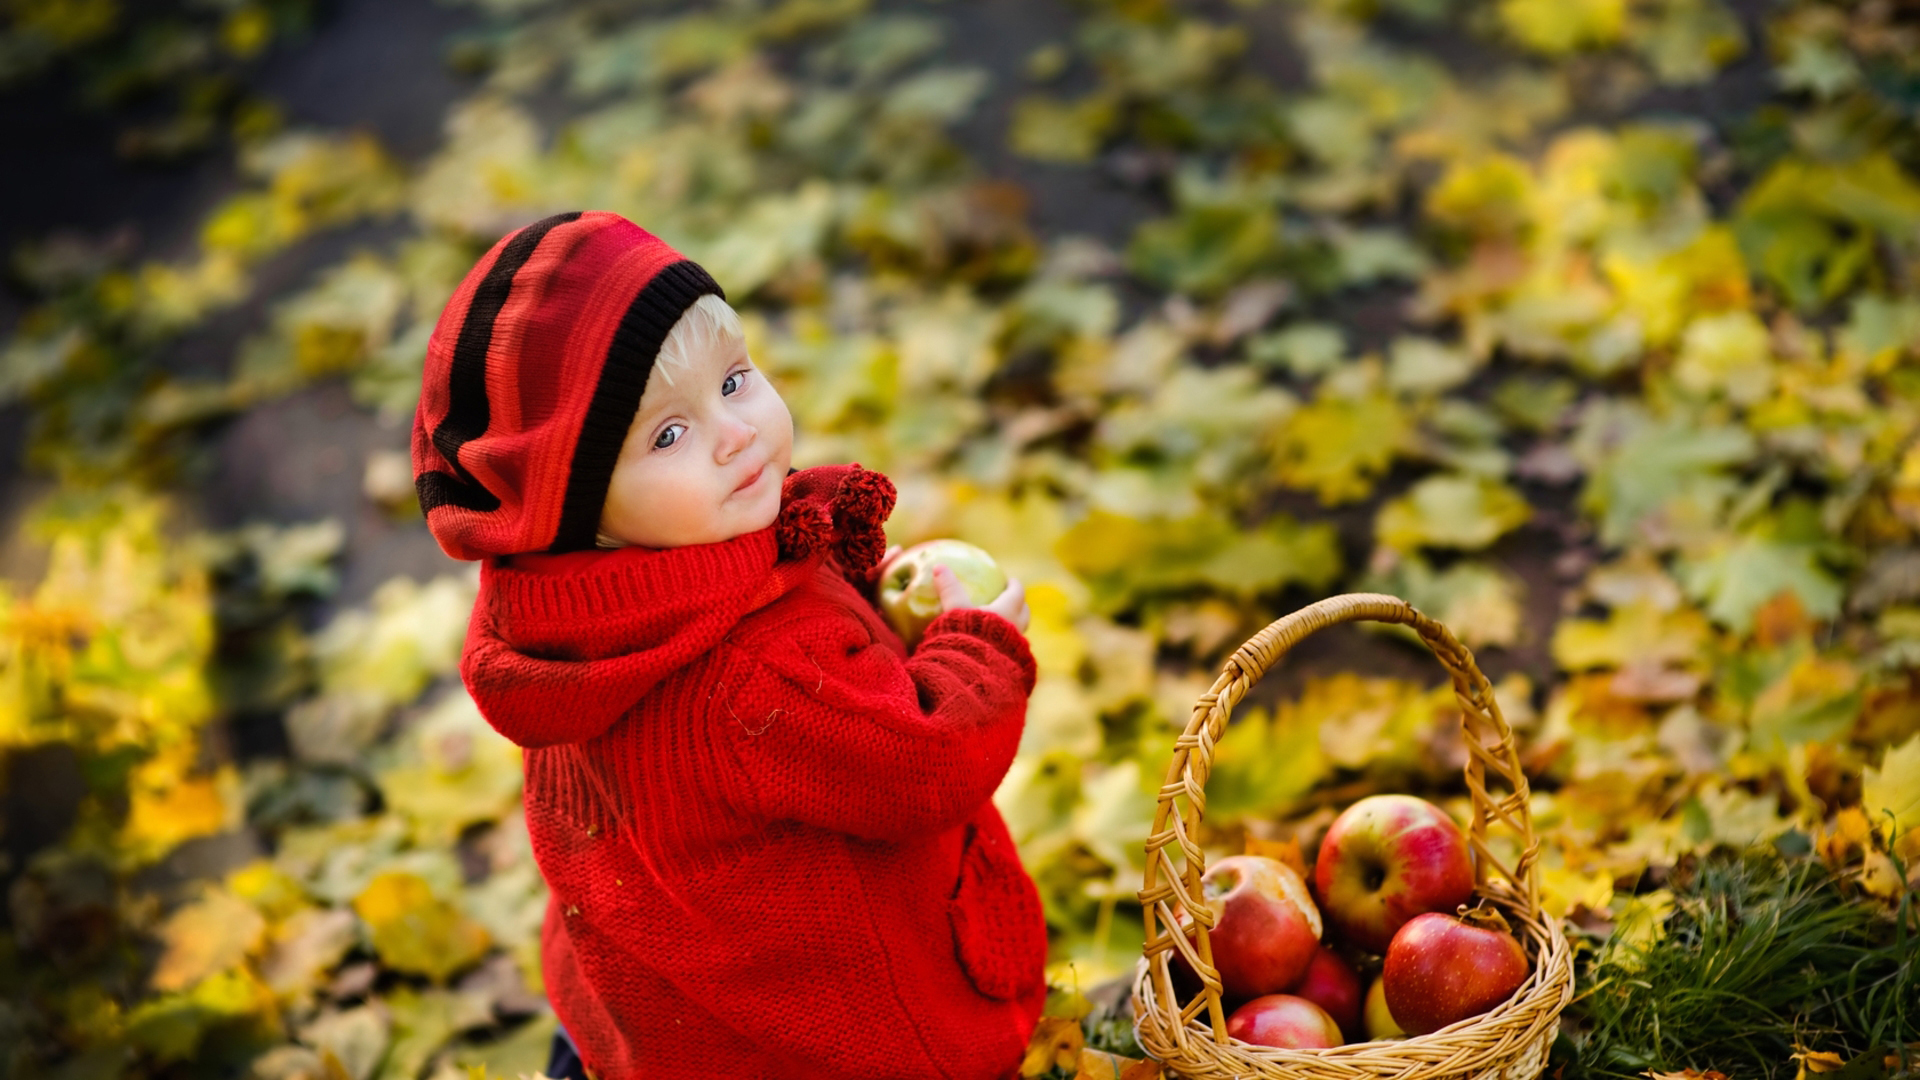 Cute Little Boy Is Looking Back Wearing Red Woolen Knitted Dress Having Apple In Hand 2K Cute